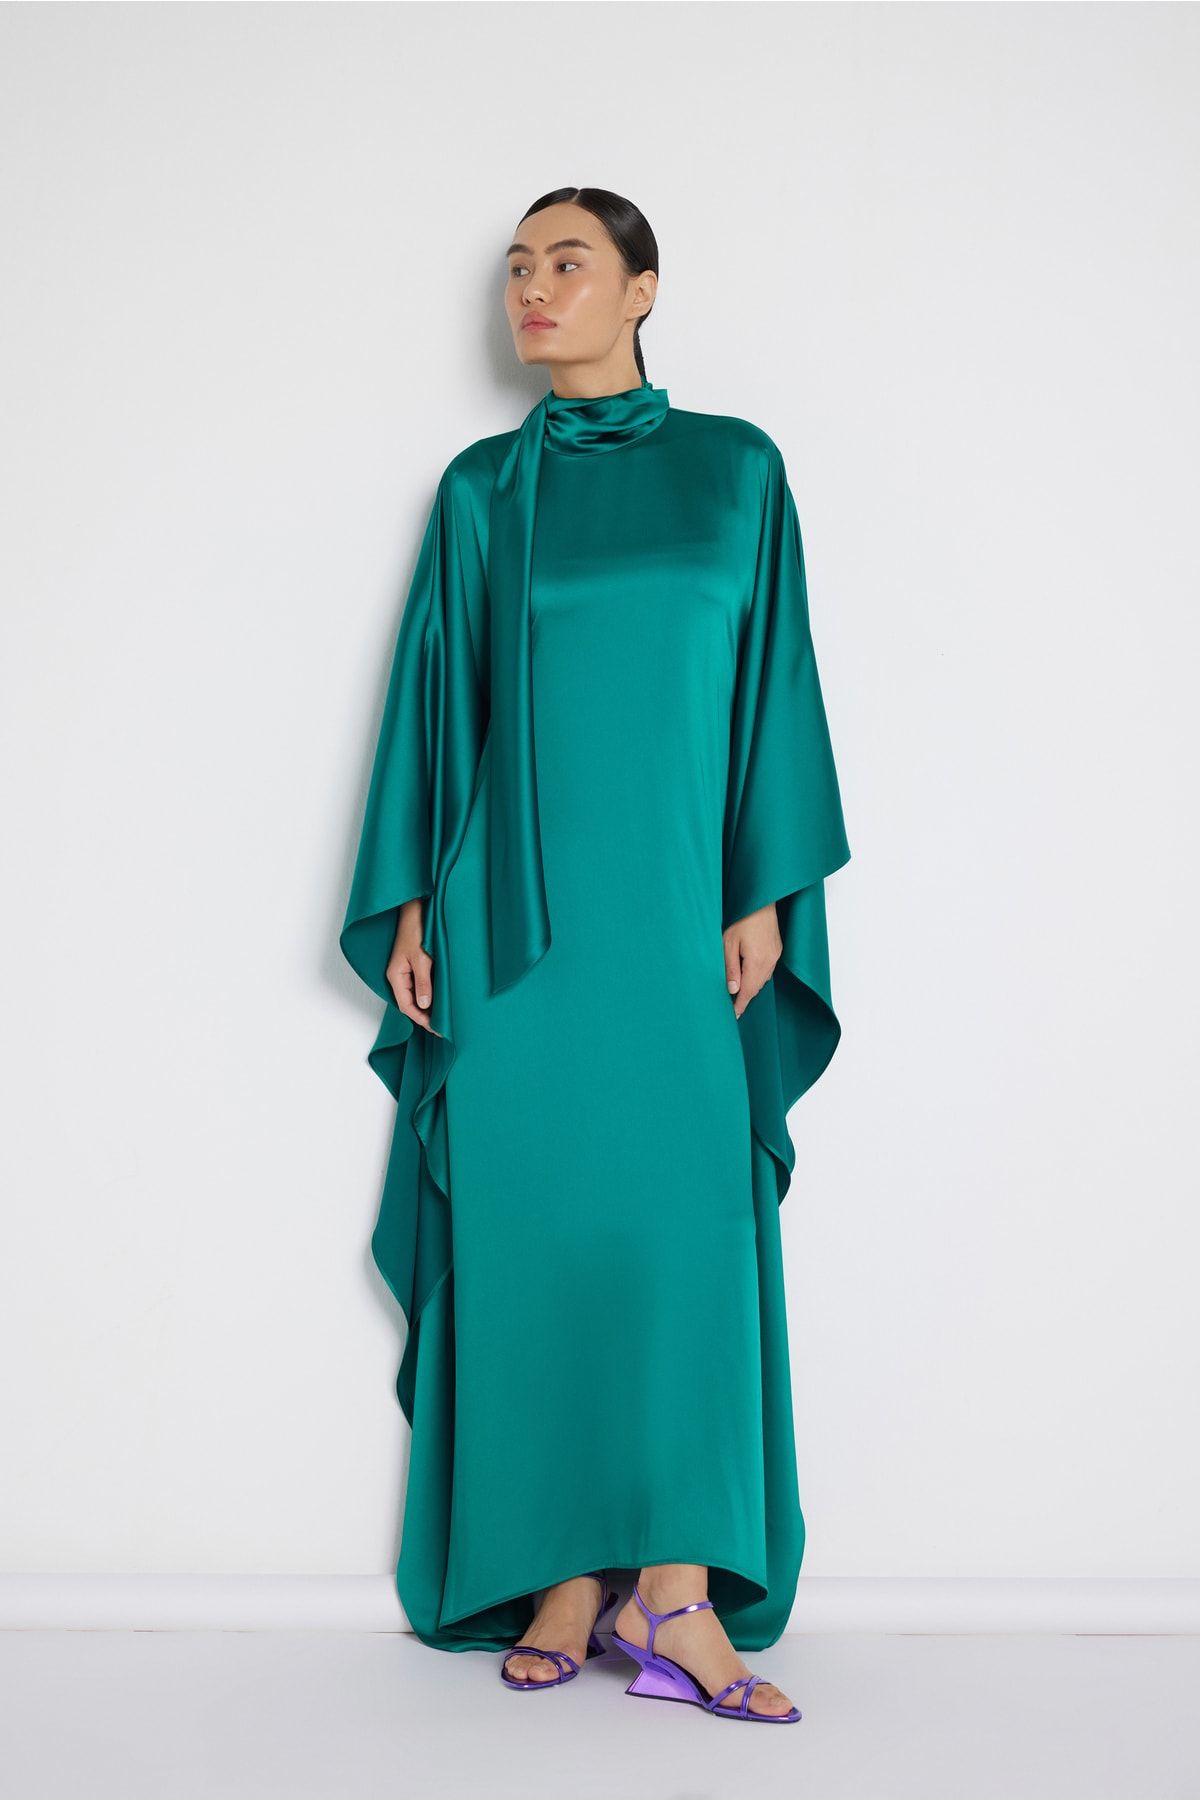 Nuum Design Boyun Bağlamalı Saten Elbise Zümrüt Yeşili